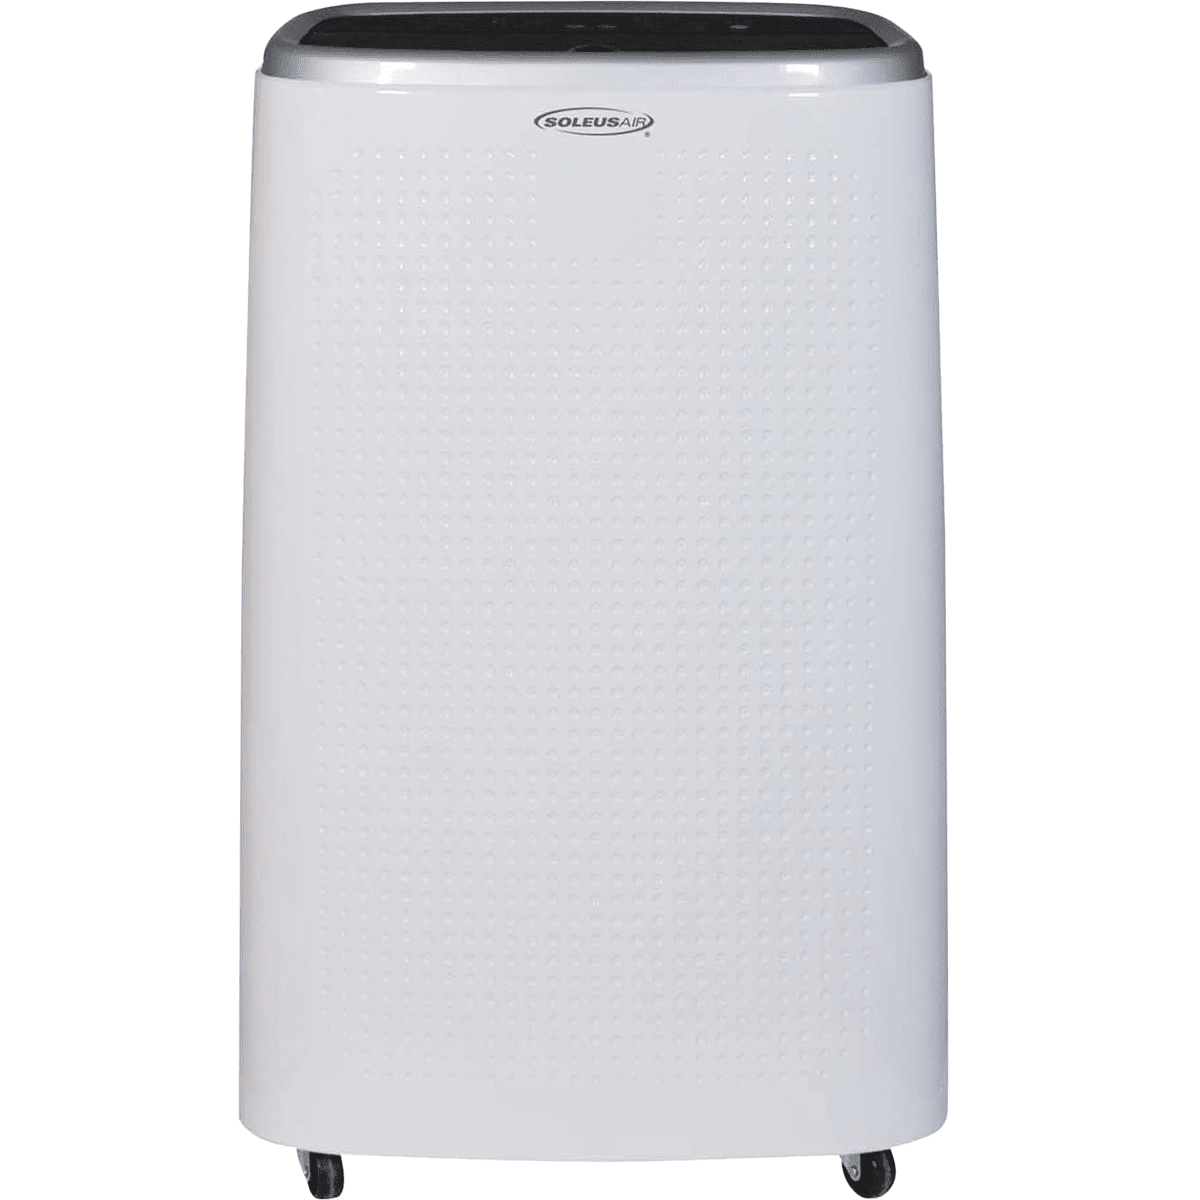 Soleus Air 8,000 BTU Portable Air Conditioner - With Heat Pump